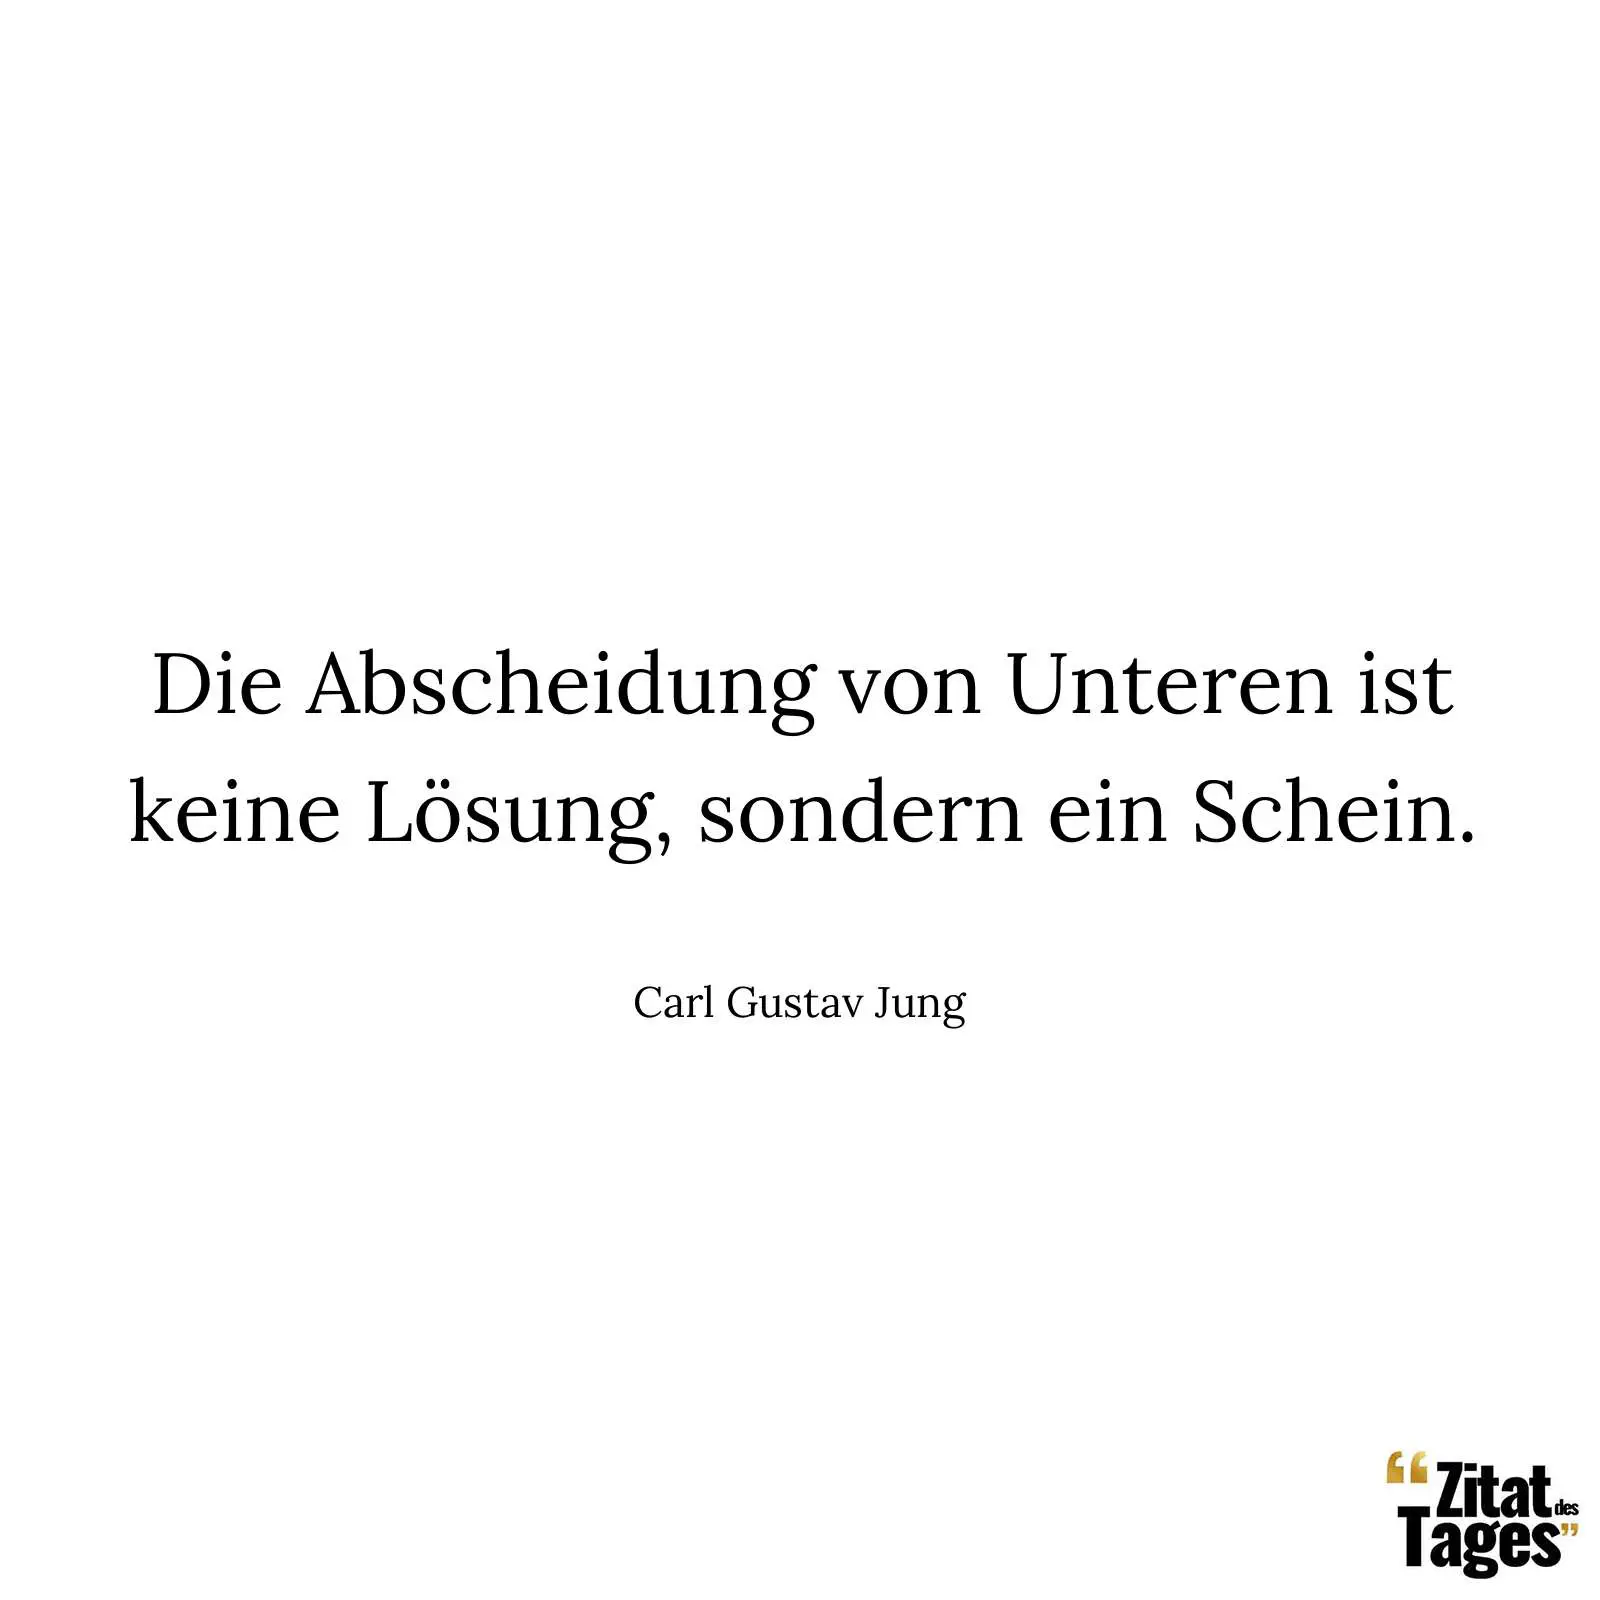 Die Abscheidung von Unteren ist keine Lösung, sondern ein Schein. - Carl Gustav Jung